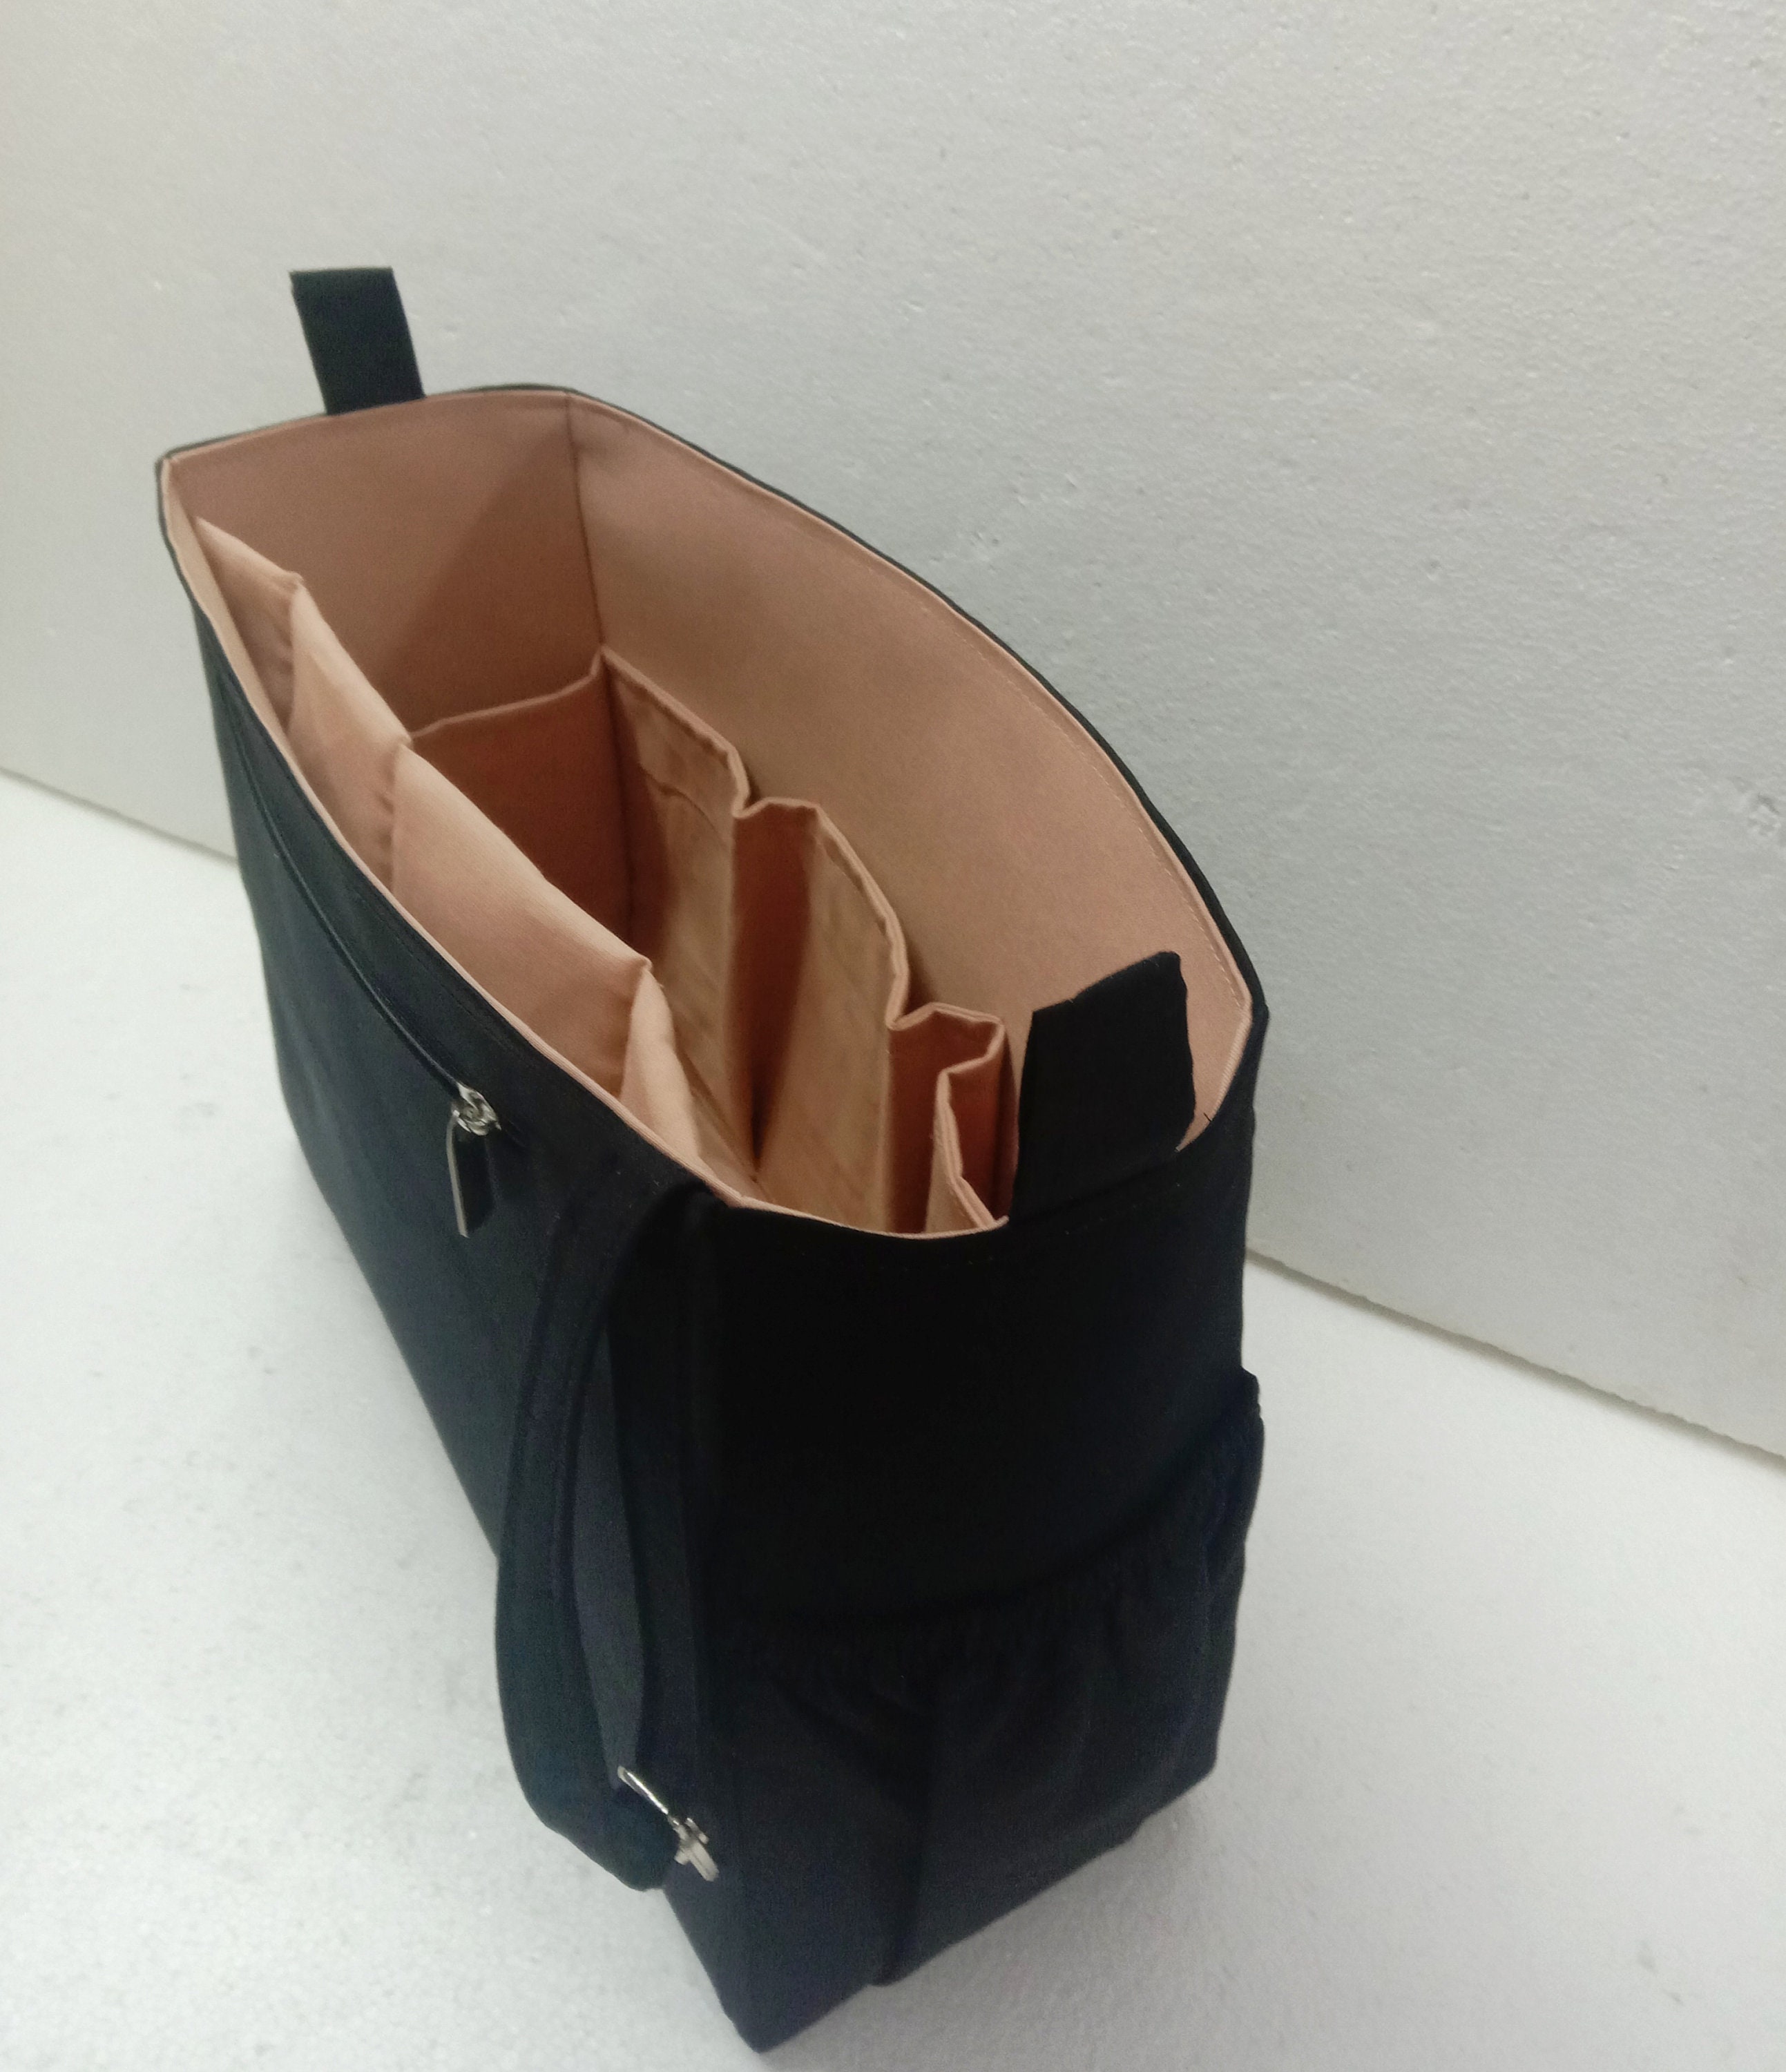 SL Sunset Bag Organizer Set of 2 / Liner Protector Slim Design 